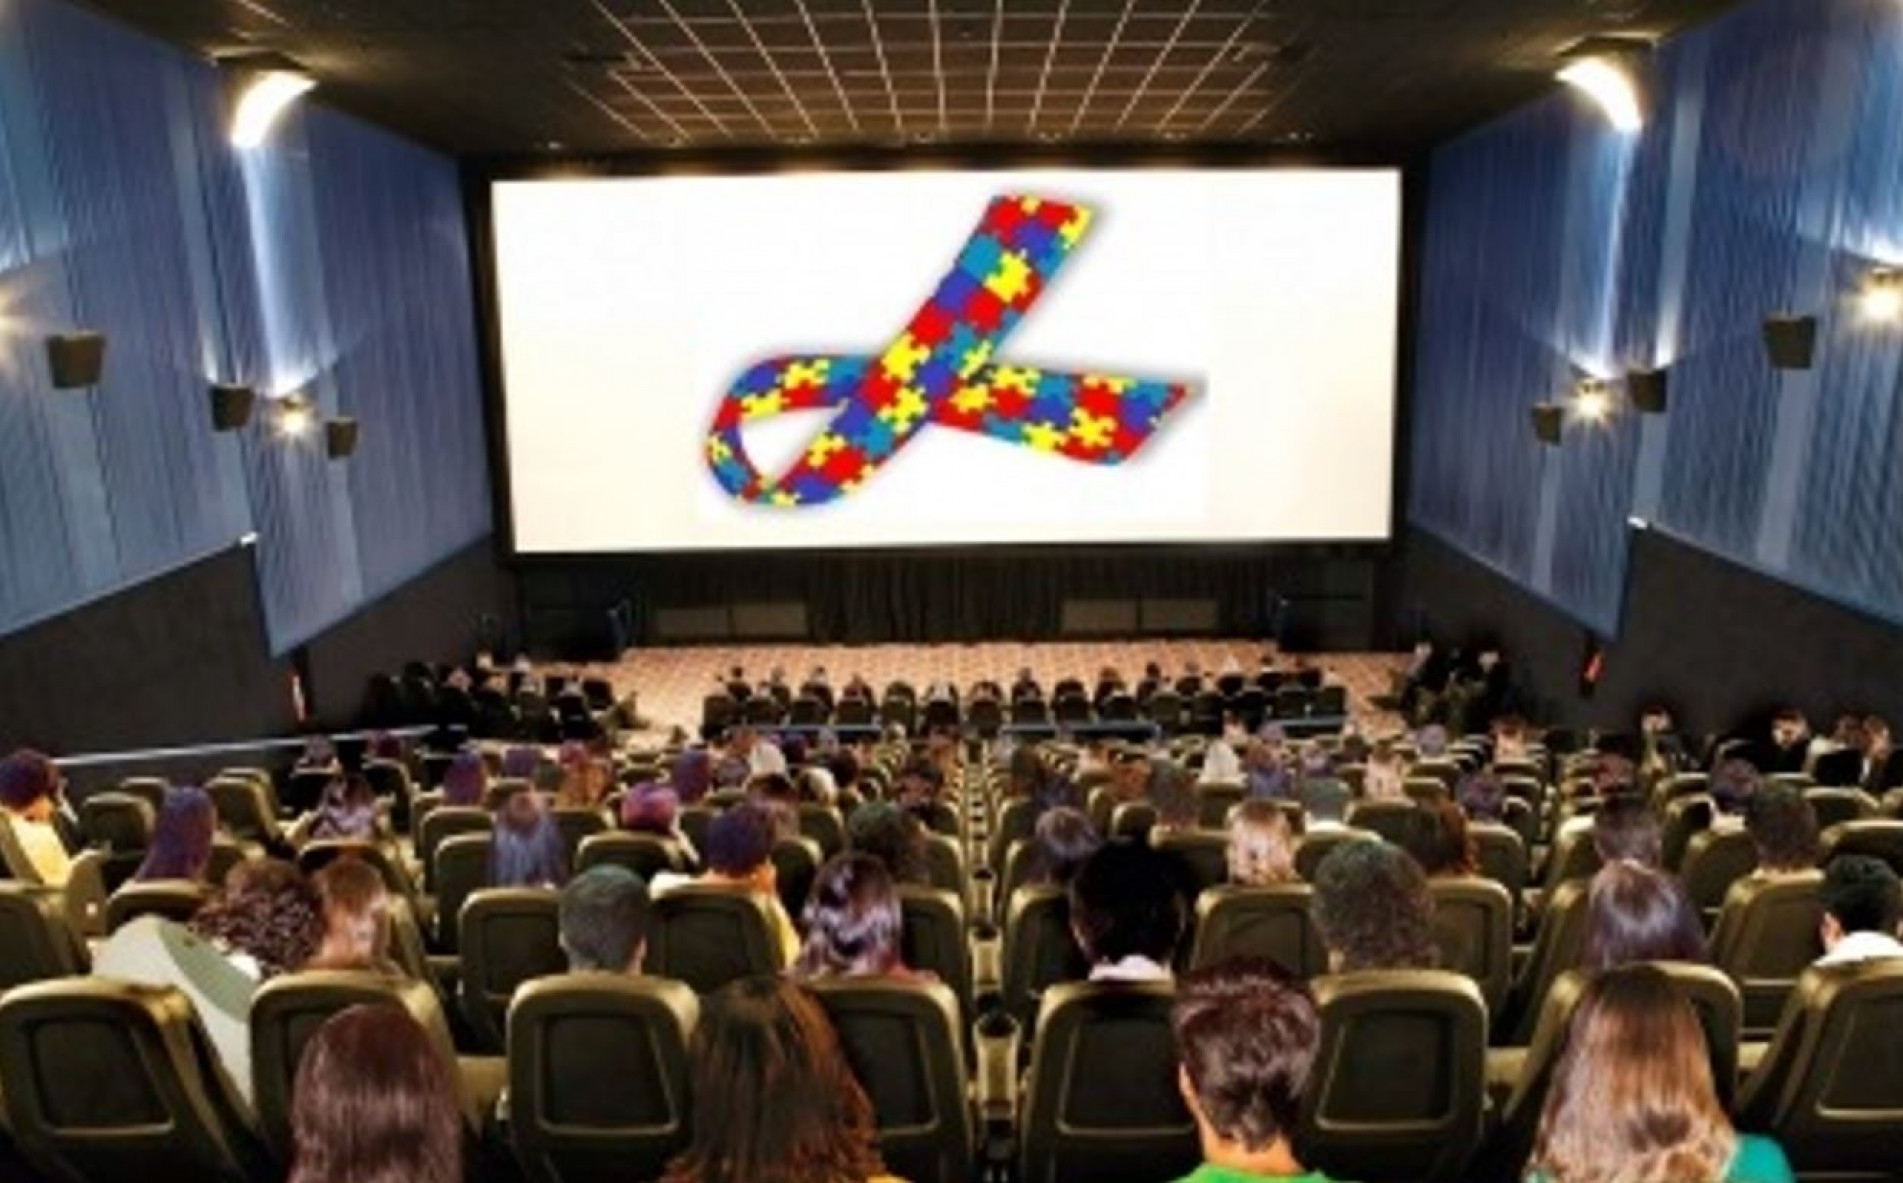 Cine Imperial promove sessão adaptada para crianças com espectro autista no  dia 16/4, Rede Bahia